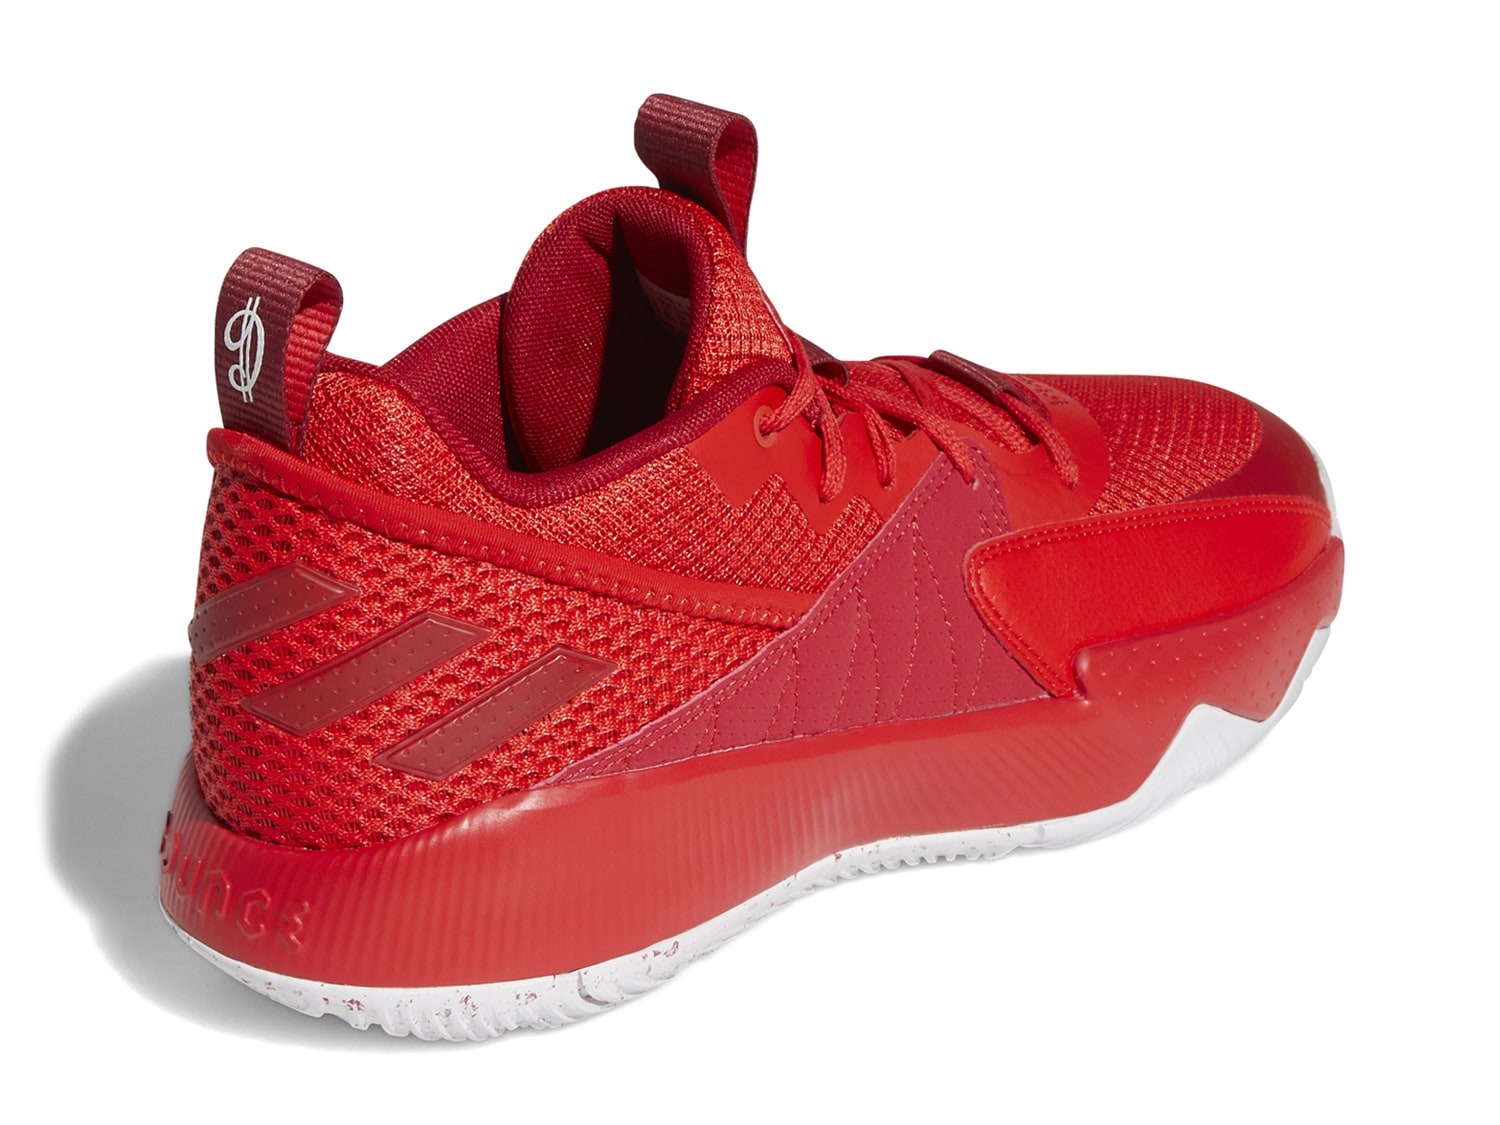 adidas dame extply 2.0 basketball shoes